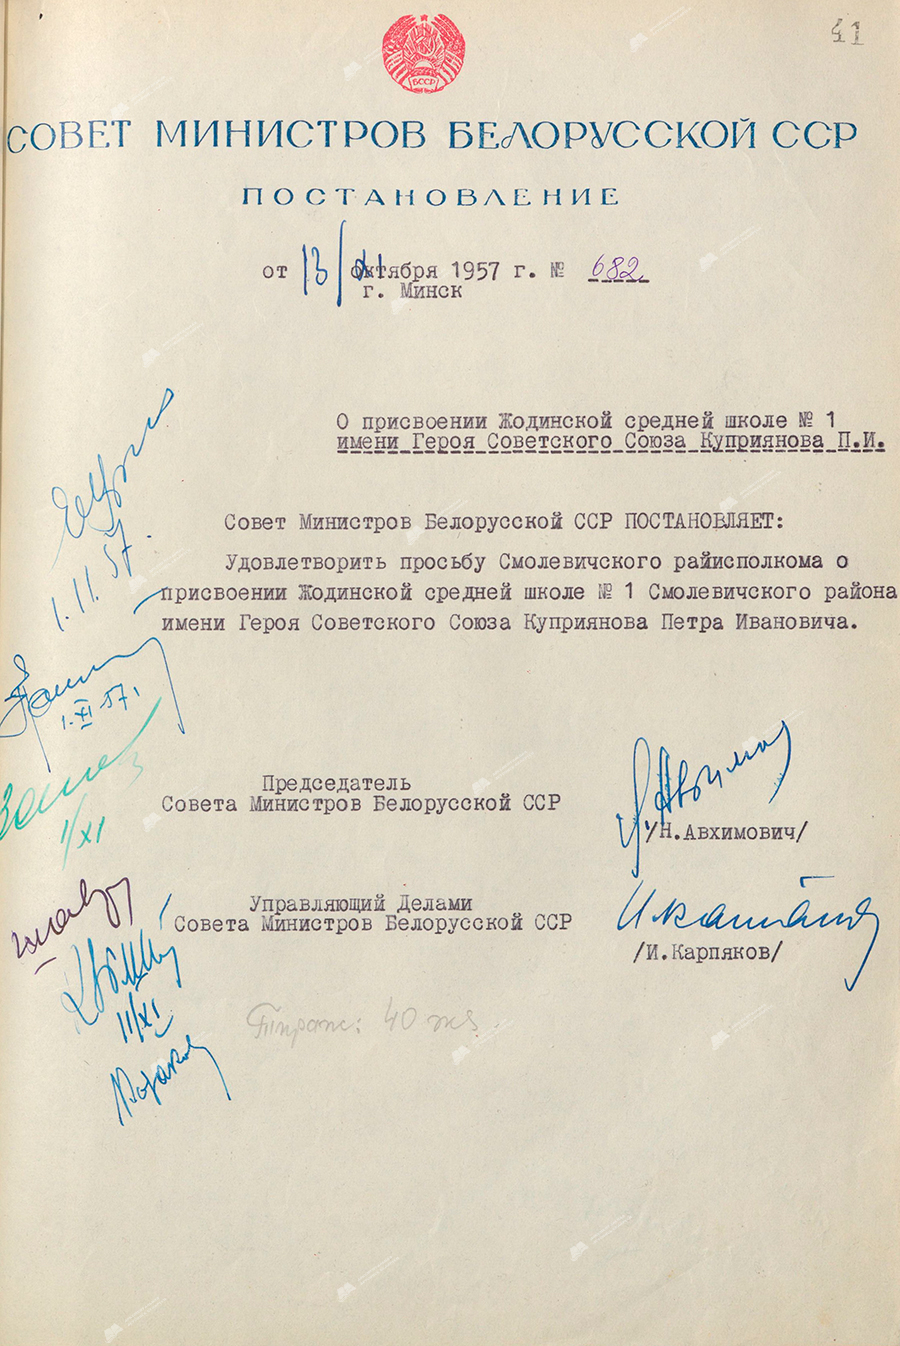 Beschluss Nr. 682 des Ministerrates der belarussischen SSR «Über die Benennung der Schodino-Sekundarschule Nr. 1 nach dem Helden der Sowjetunion P.I.Kuprijanow»-с. 0